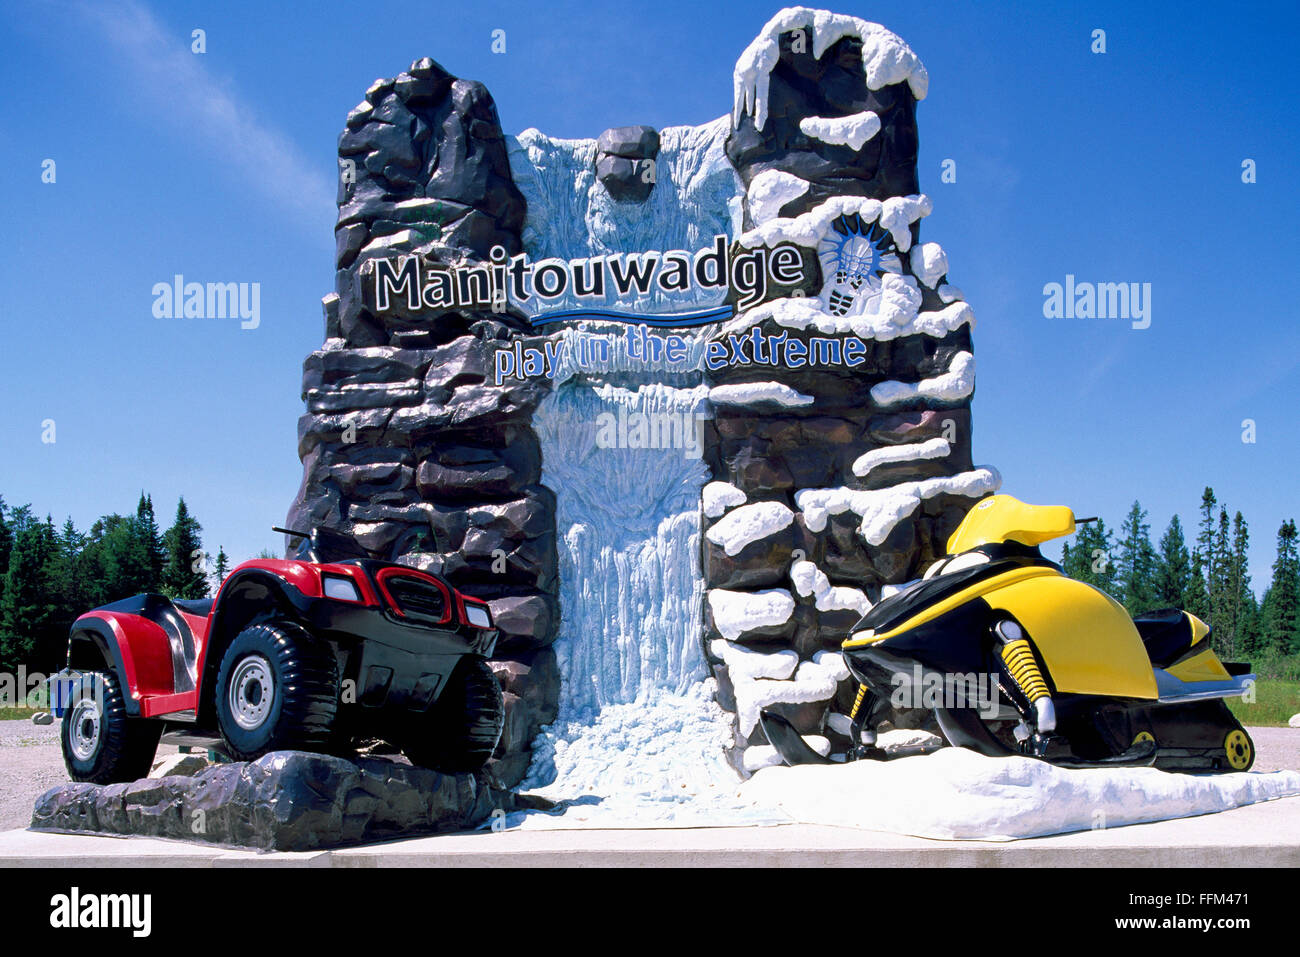 Cartel de bienvenida a la ciudad de Manitouwadge, Ontario, Canadá - ATV y Skidoo escaparate Local actividades recreativas de verano e invierno Foto de stock